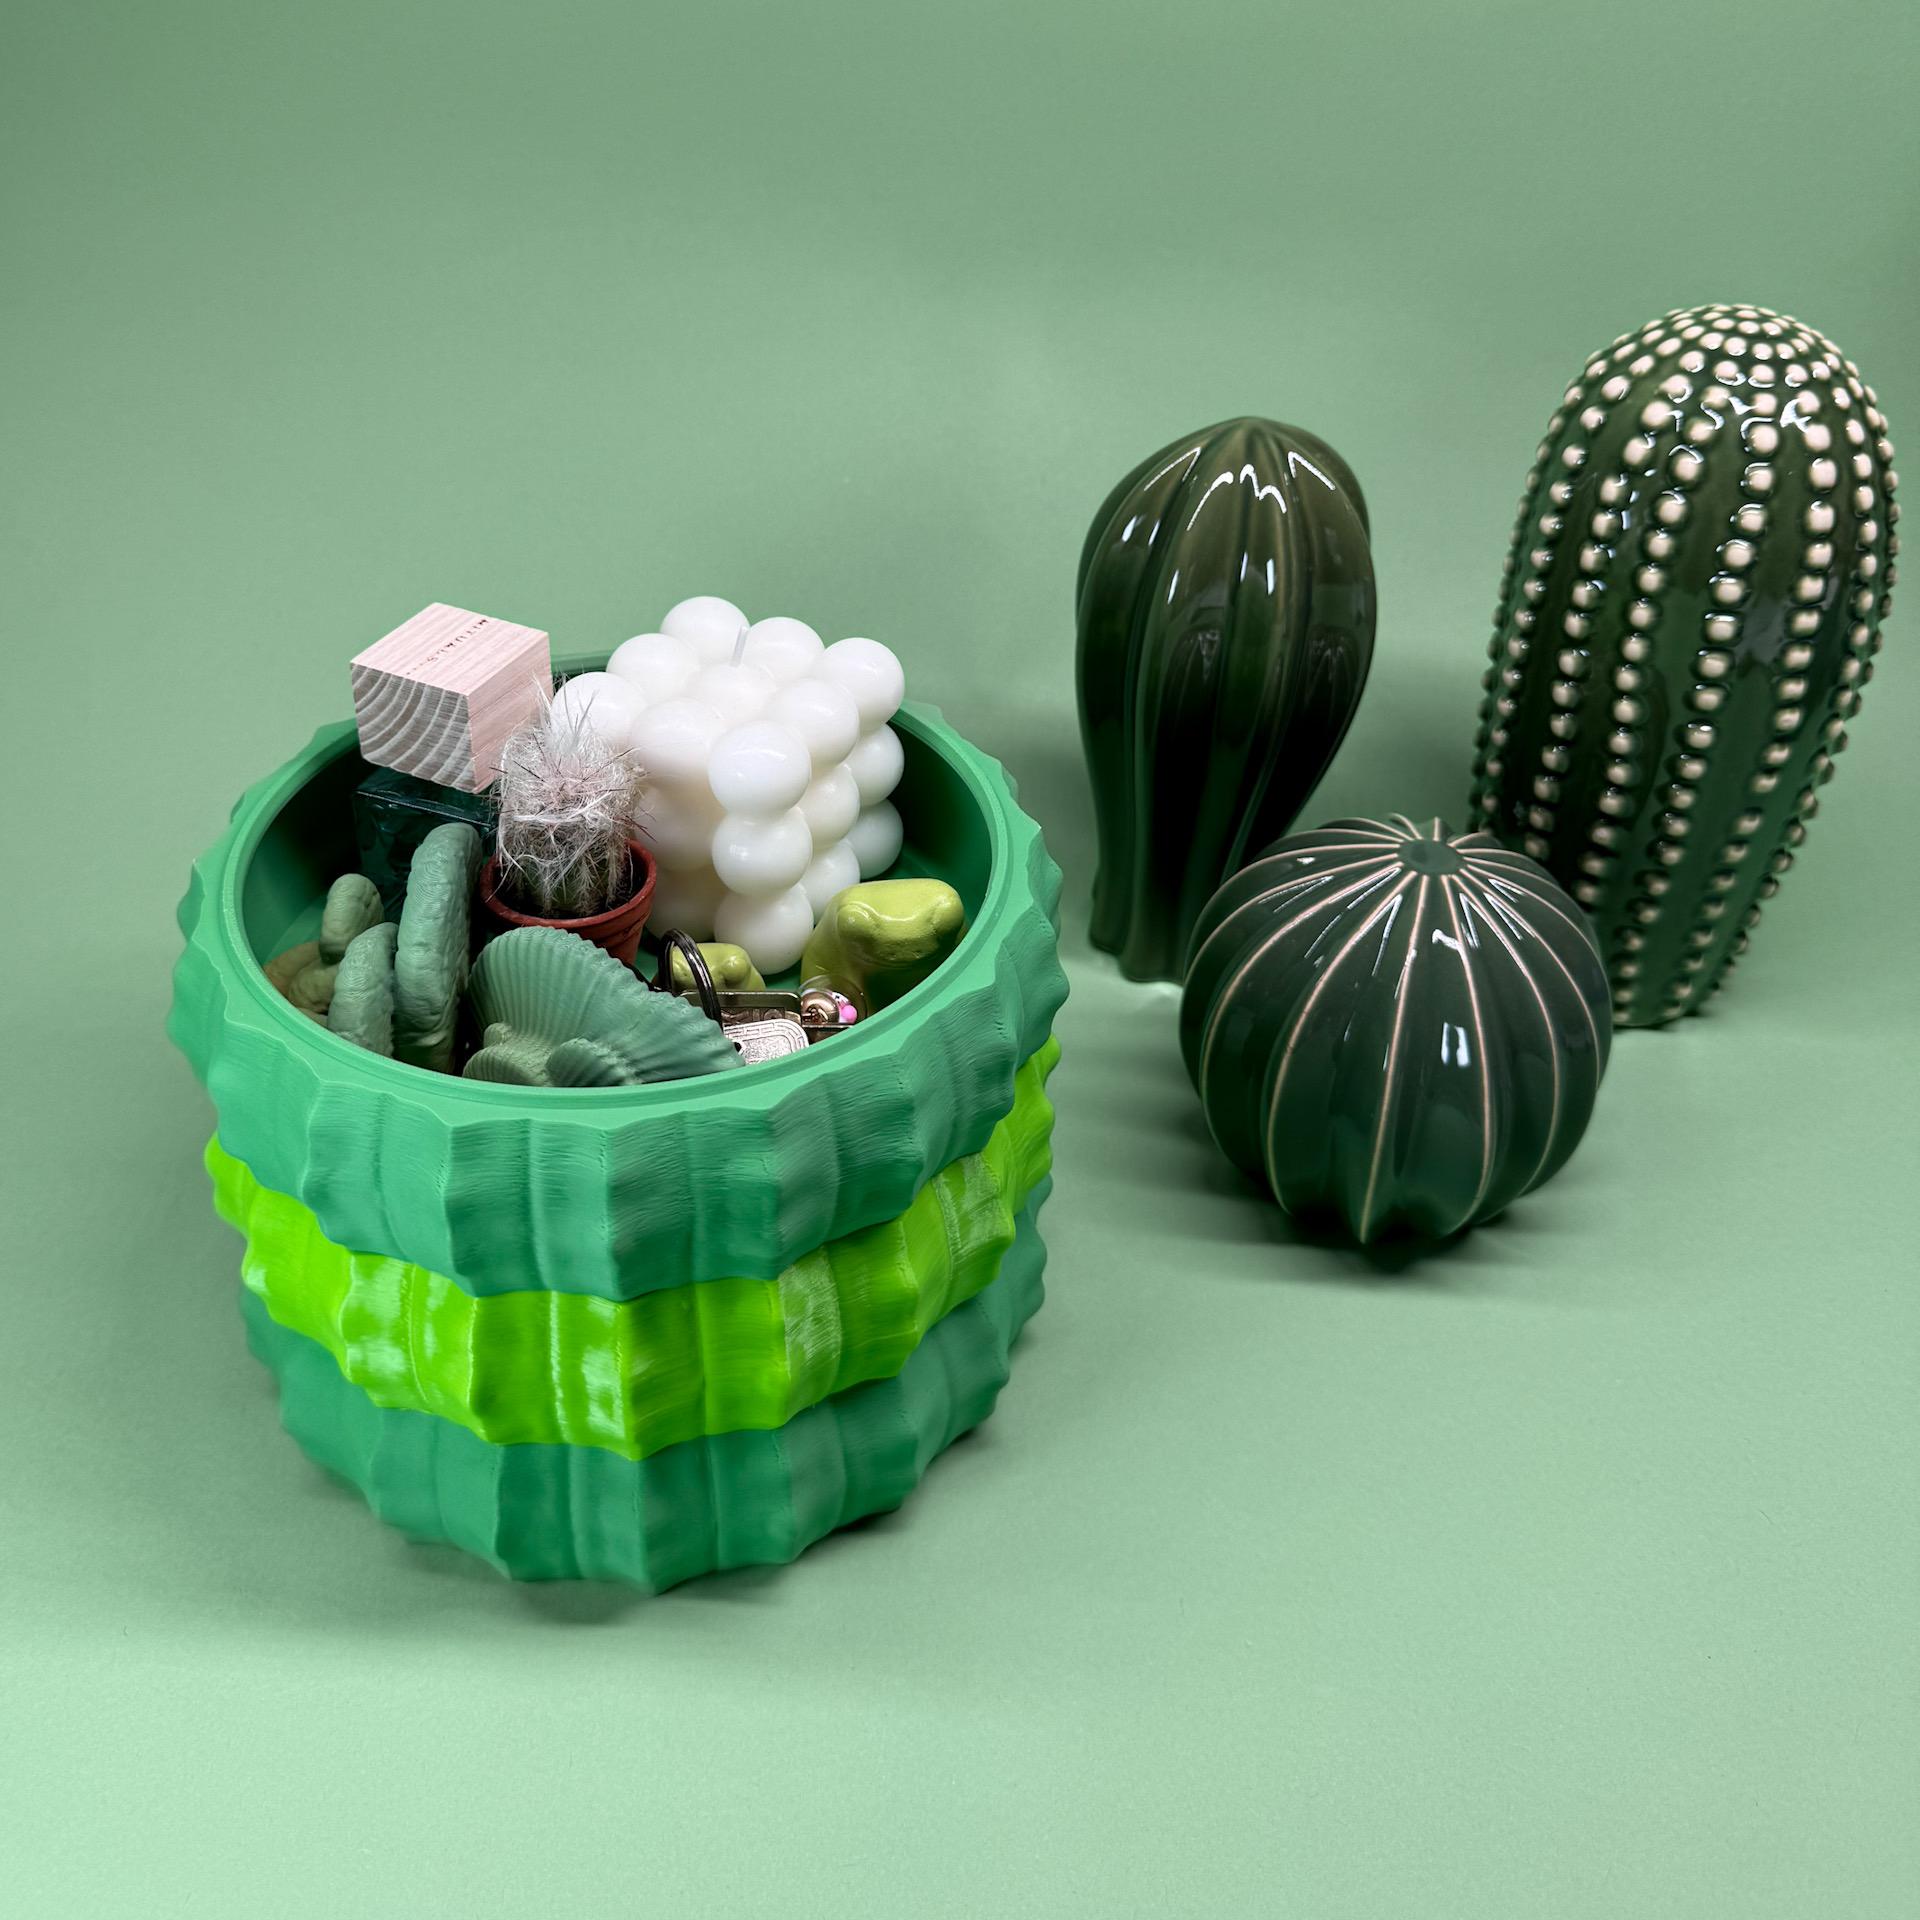 Stackable bowl “cactus” 3d model